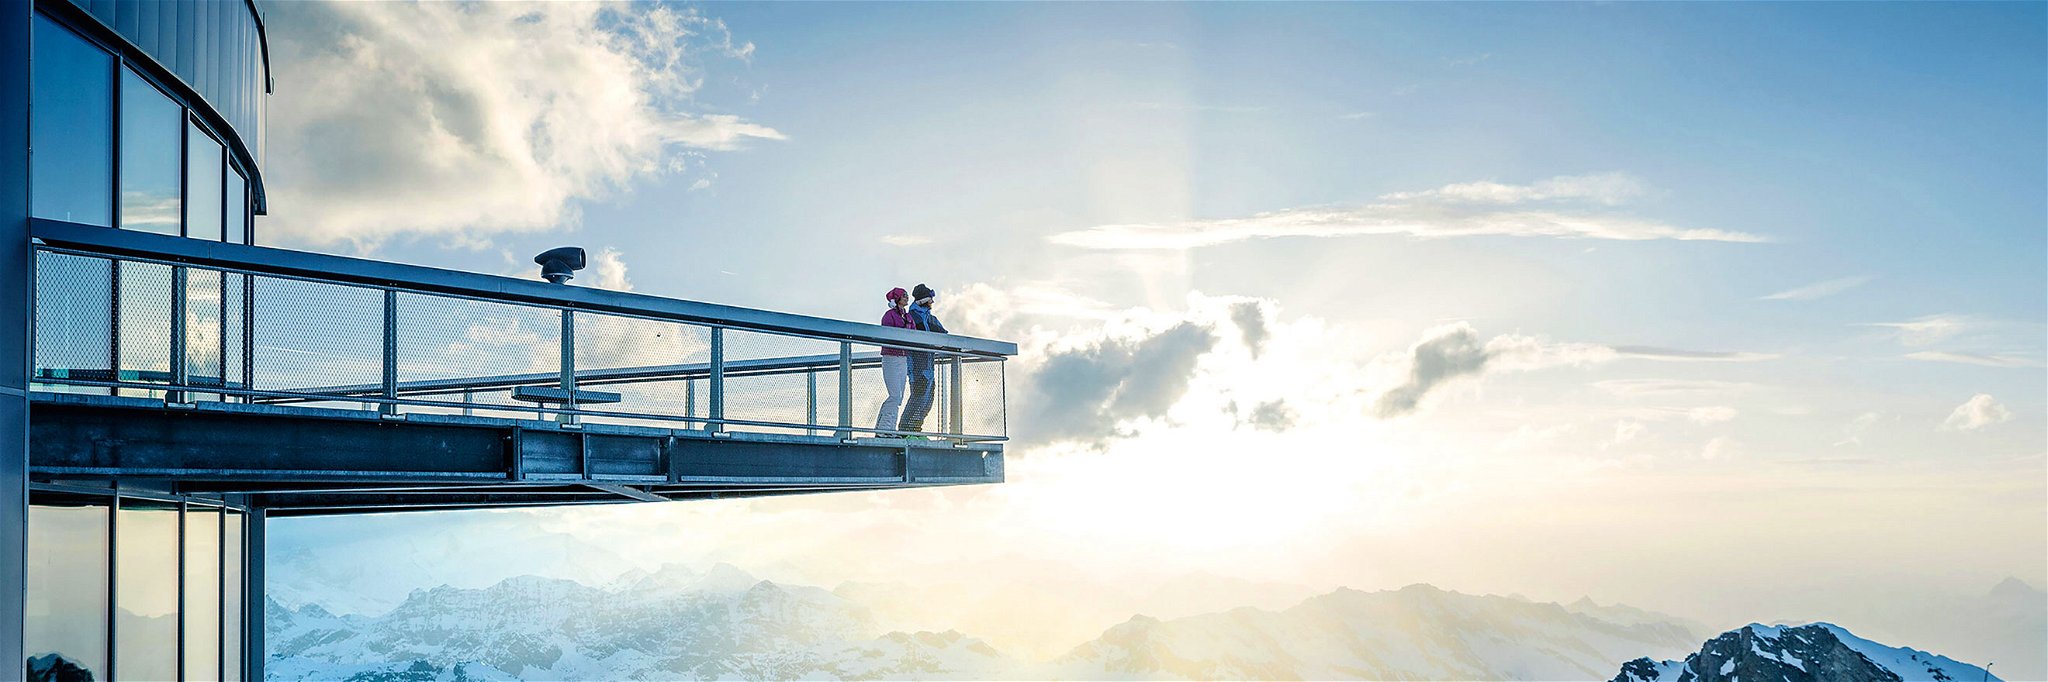 Spektakuläre Architektur, spektakuläre Aussichten: Die Aussichtsplattform&nbsp;»Top of Salzburg« am Kitzsteinhorn in den Hohen Tauern auf über 3200 Metern Seehöhe. Perfekte Bedingungen für Gletscherskilauf.